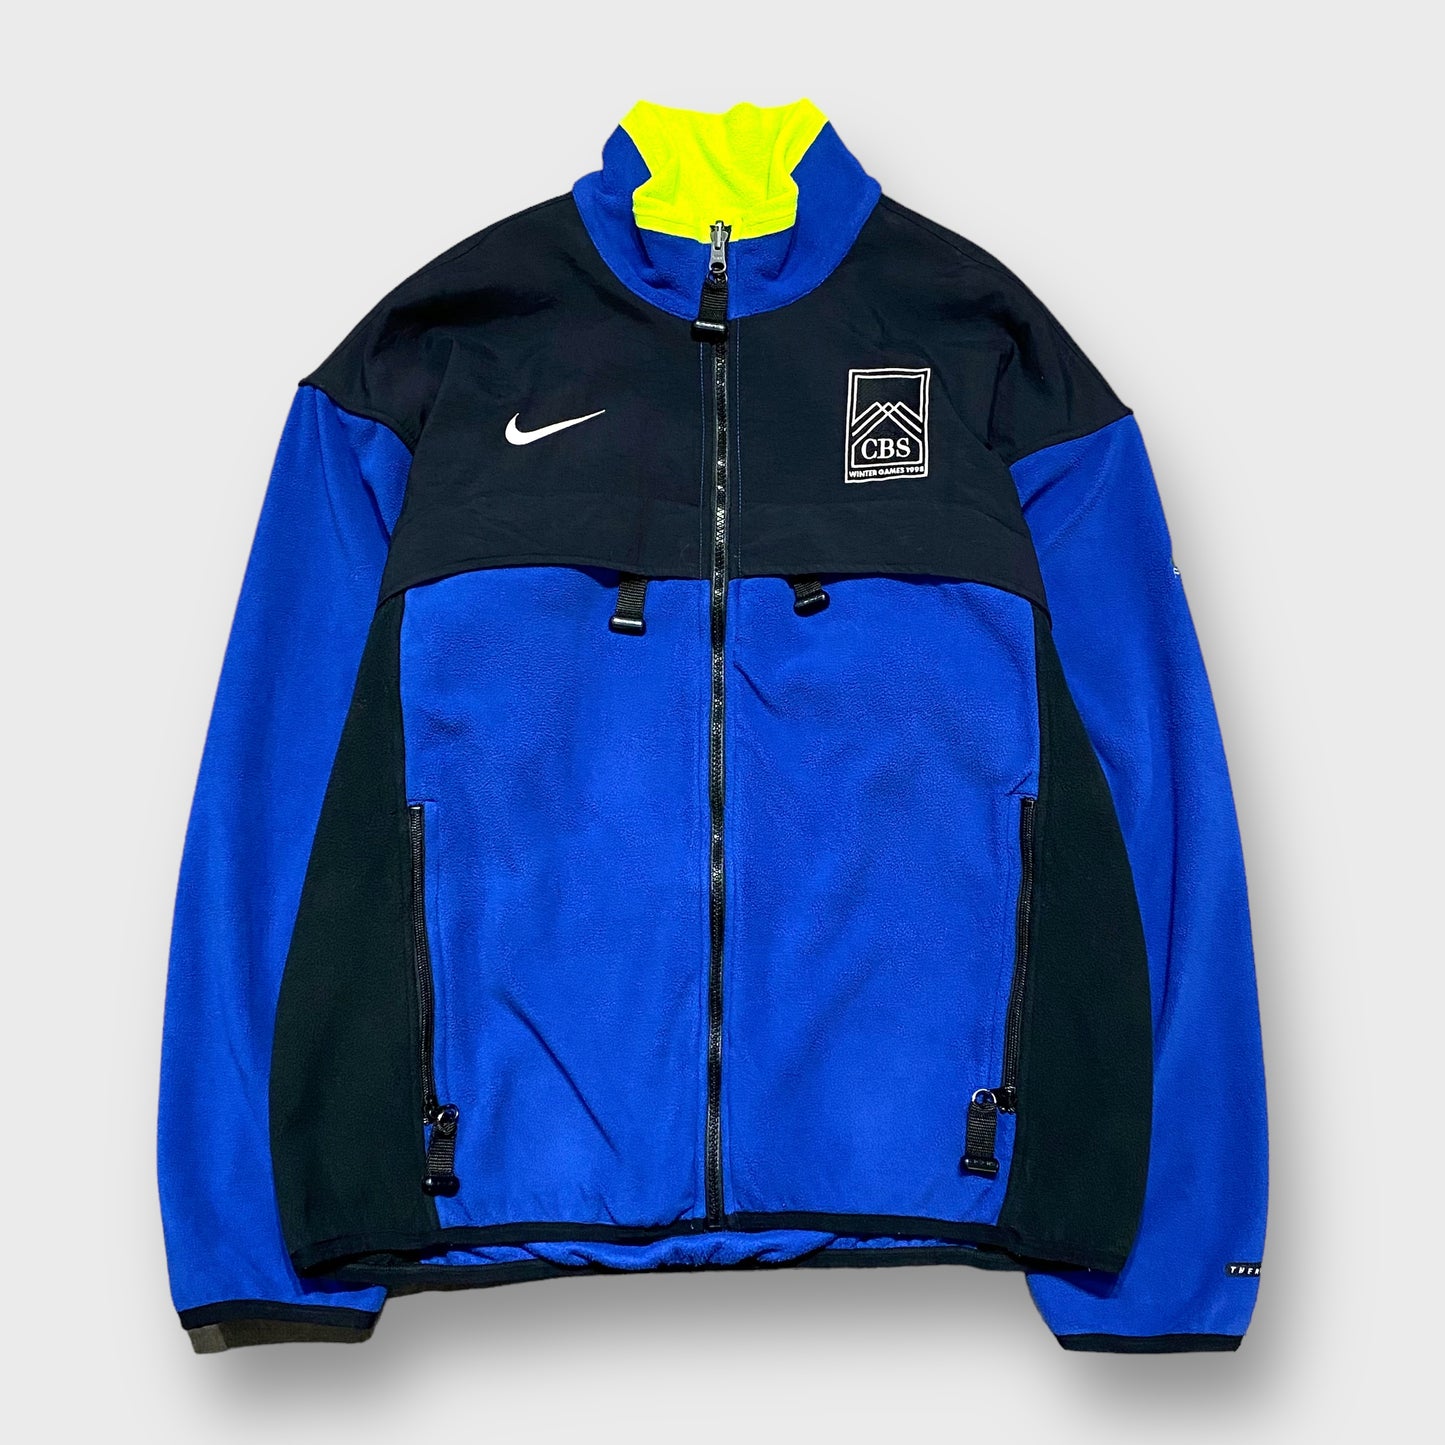 90's "NIKE ACG" Fleece jacket